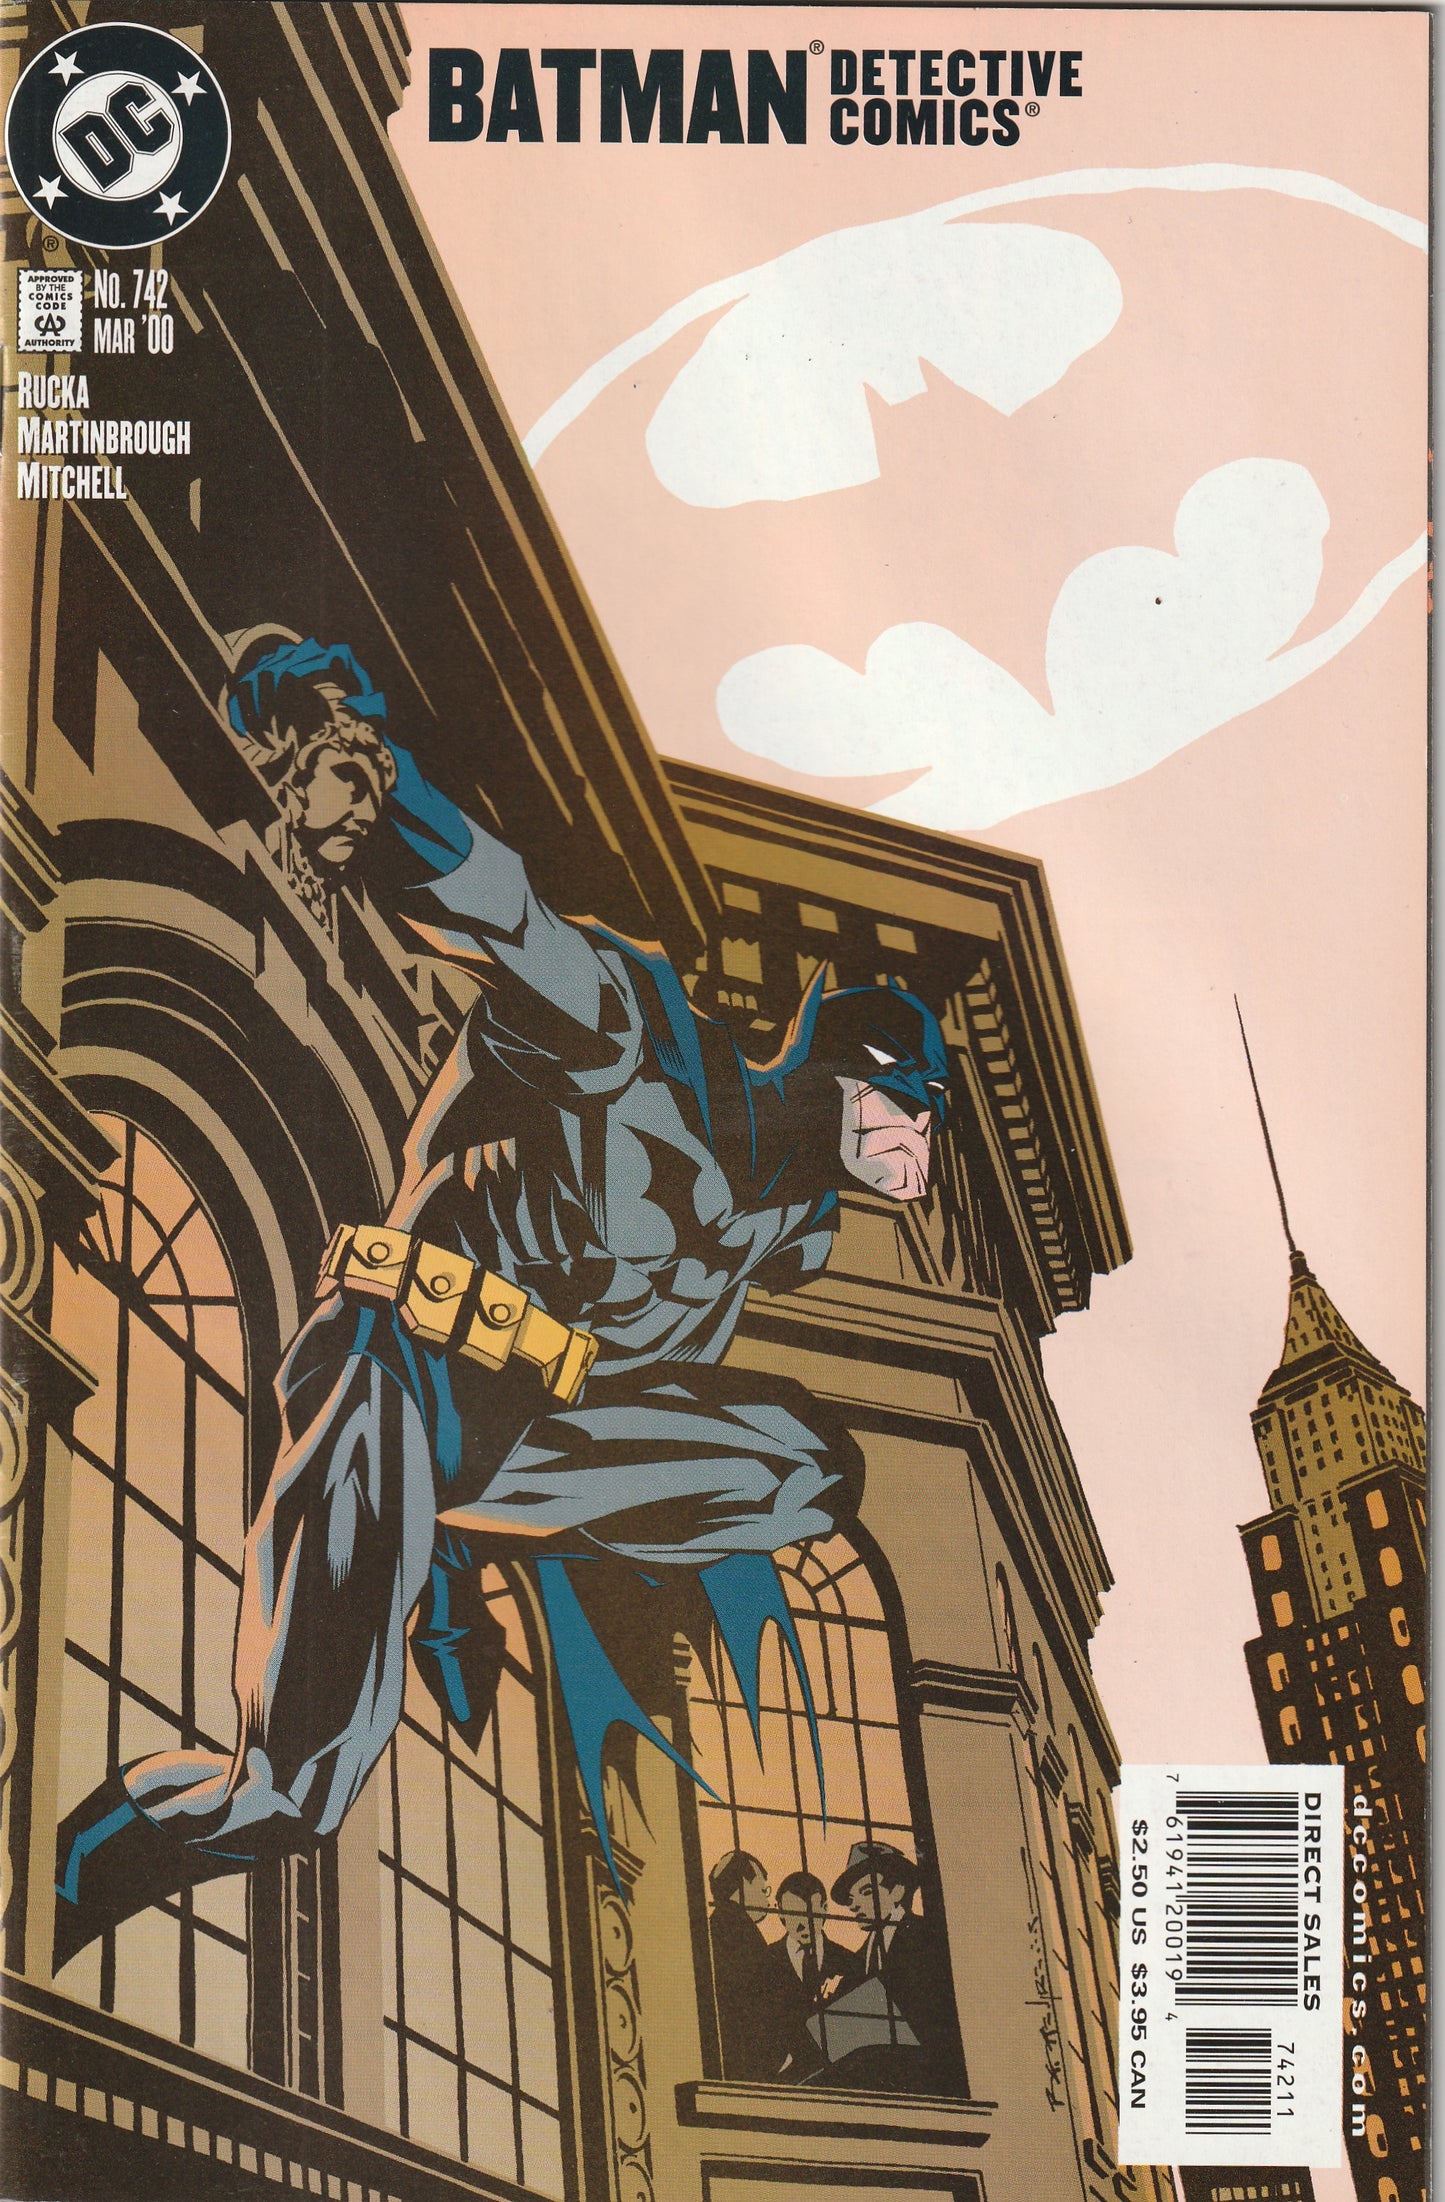 Detective Comics #742 (2000) - 1st Appearance of Crispus Allen, The Spectre